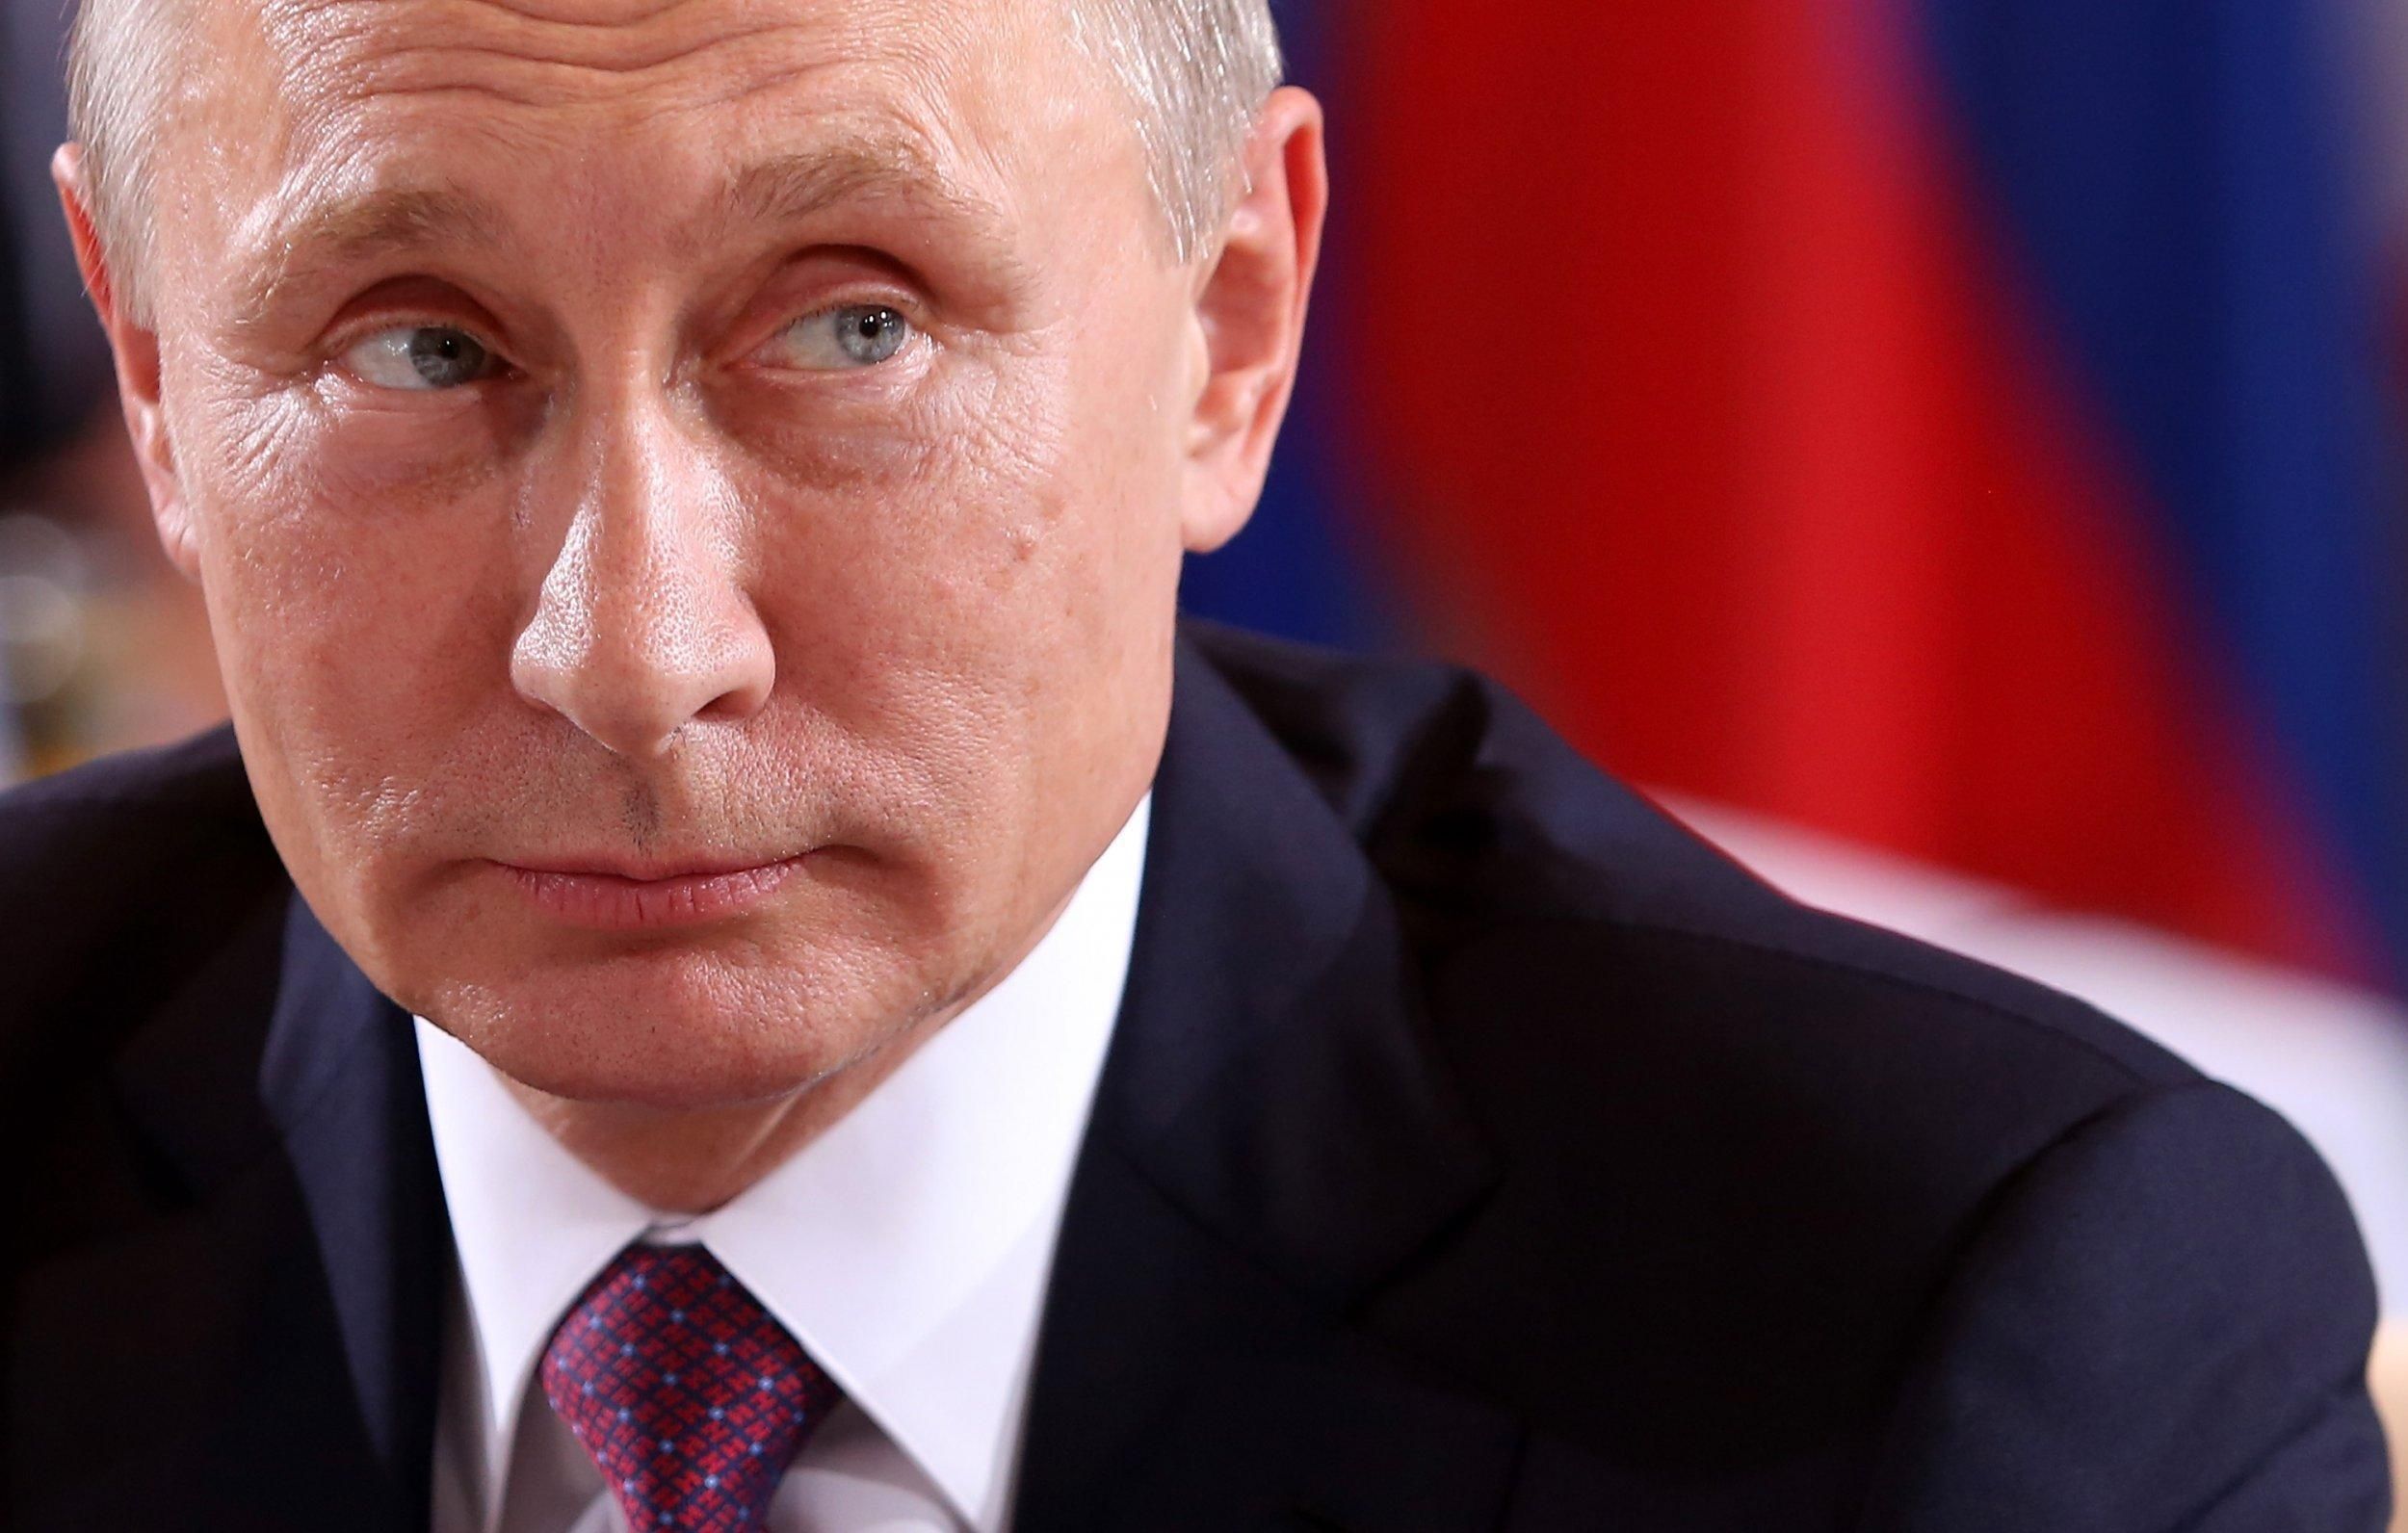 Путіна на прес-конференції спитали про допінг та дискваліфікацію Росії: він знову збрехав